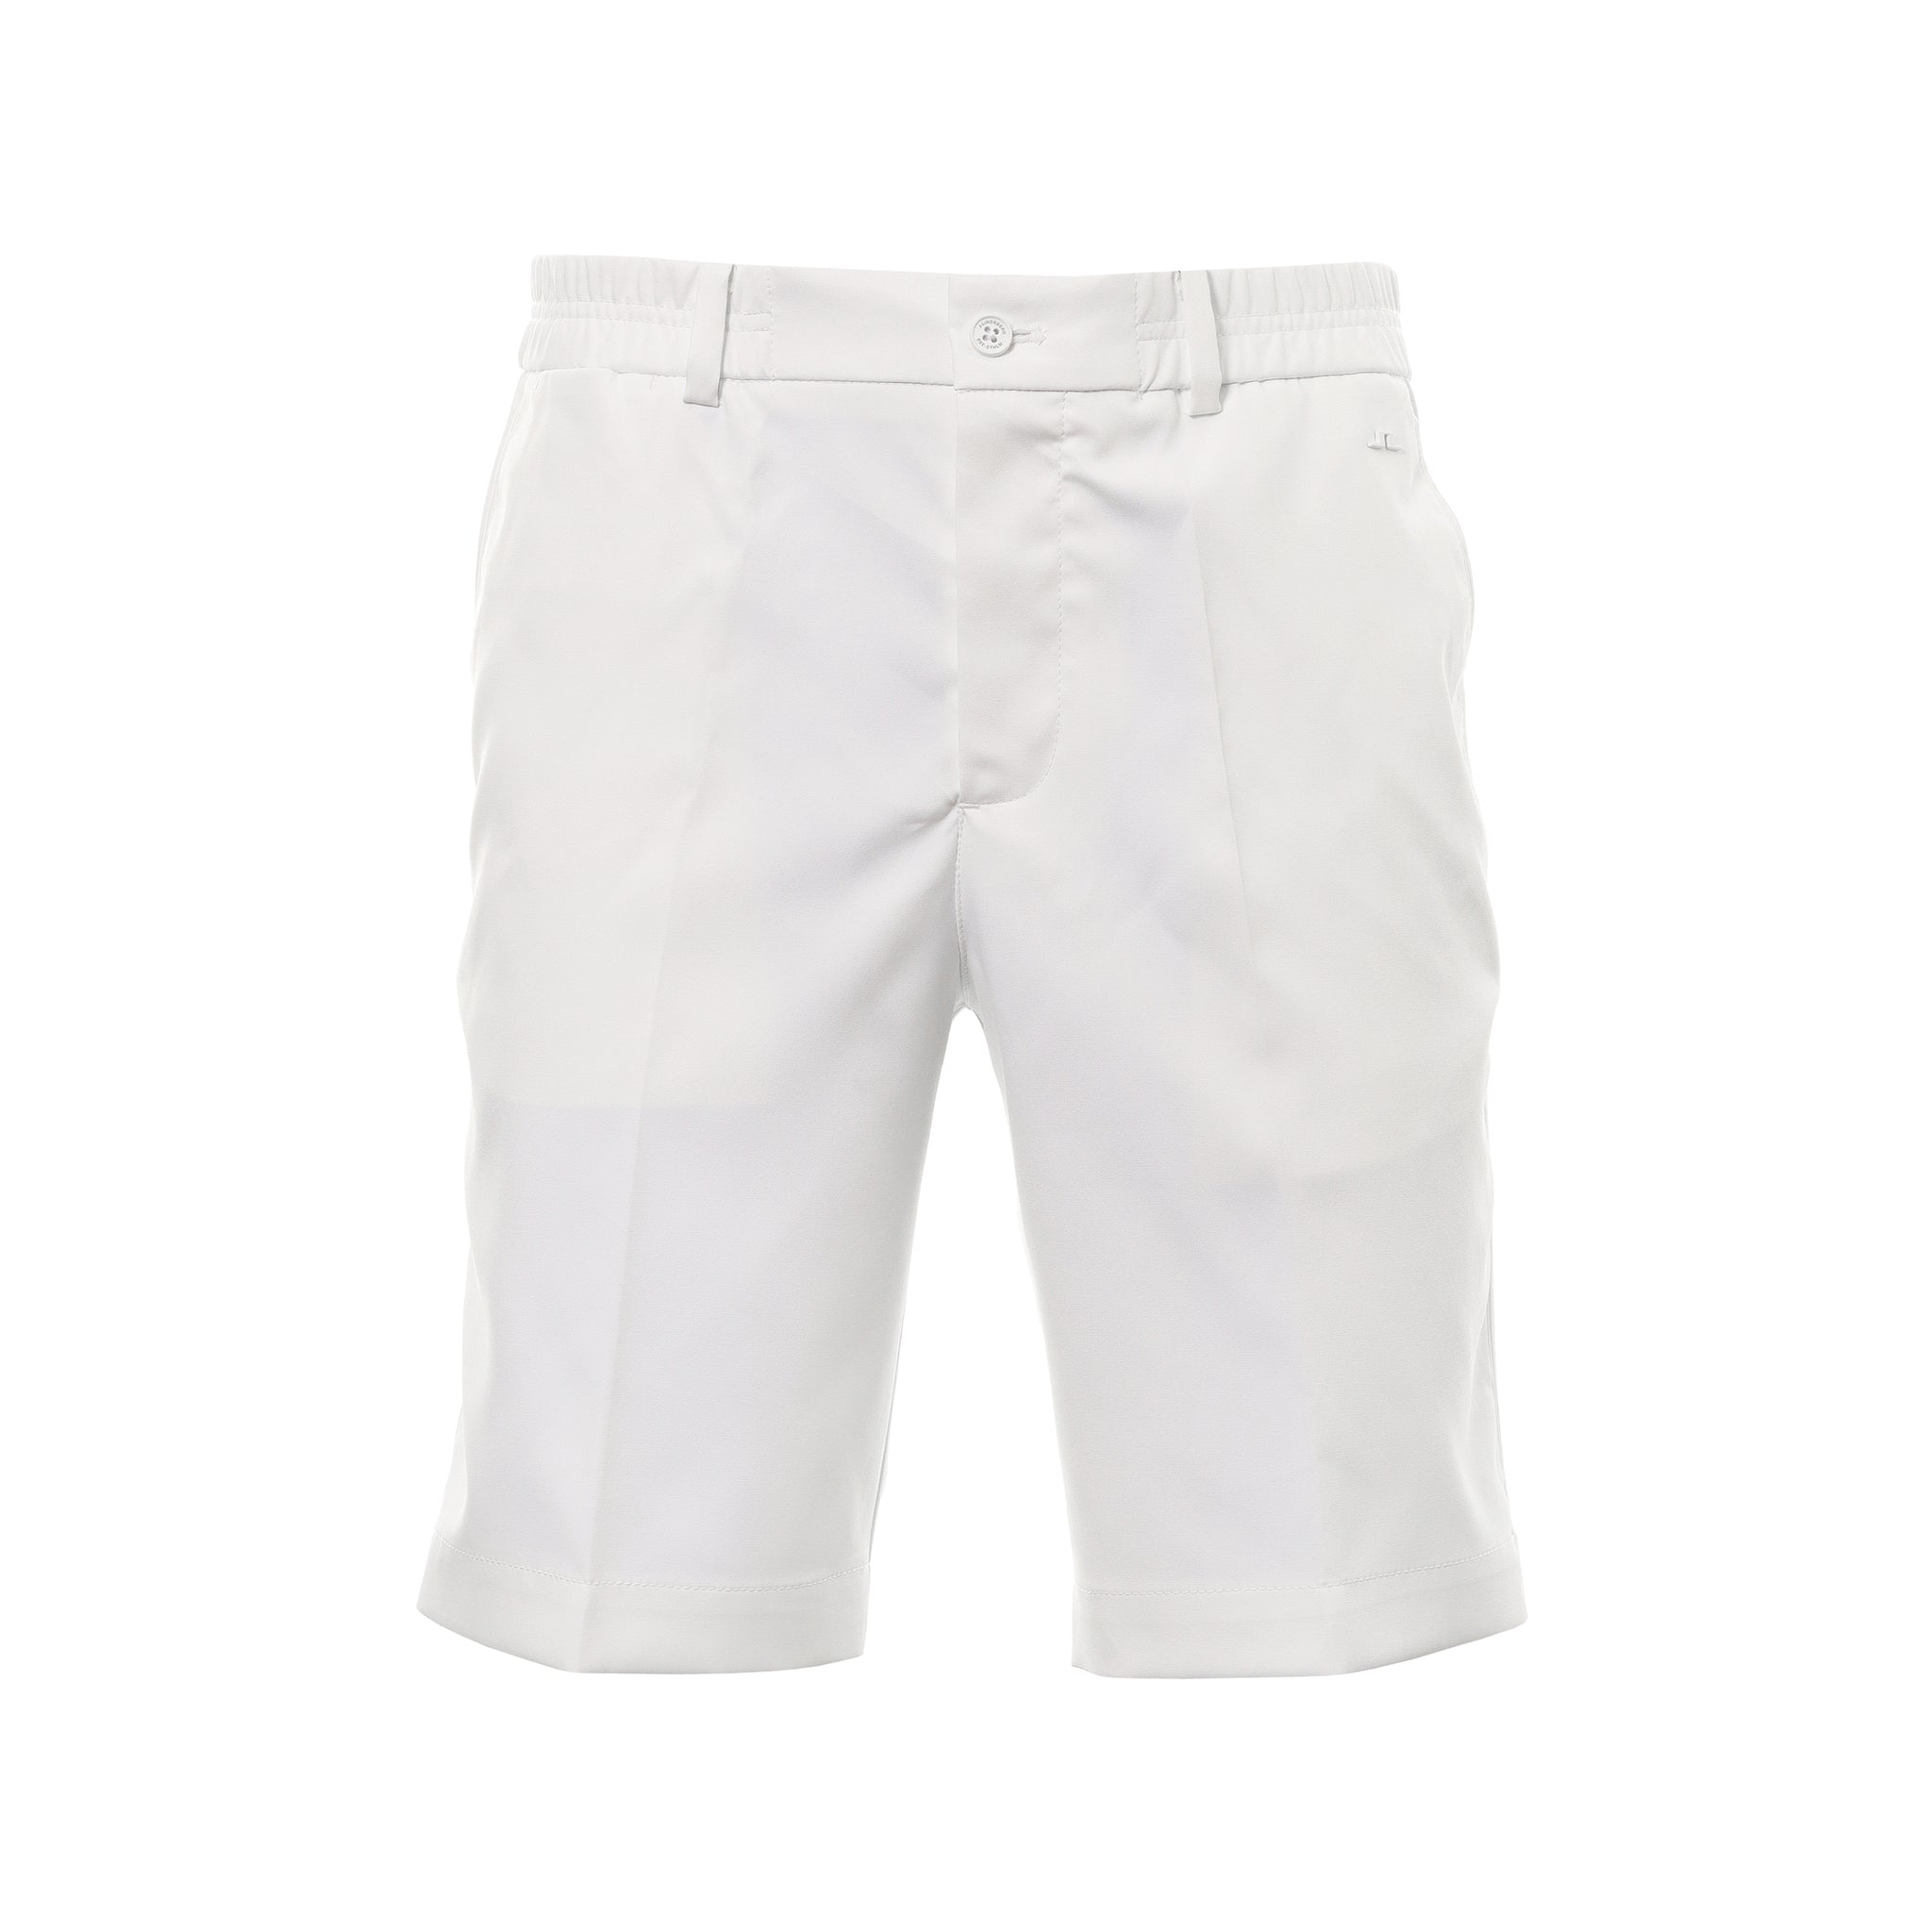 j-lindeberg-golf-stuart-stripe-shorts-gmpa07913-0000-white